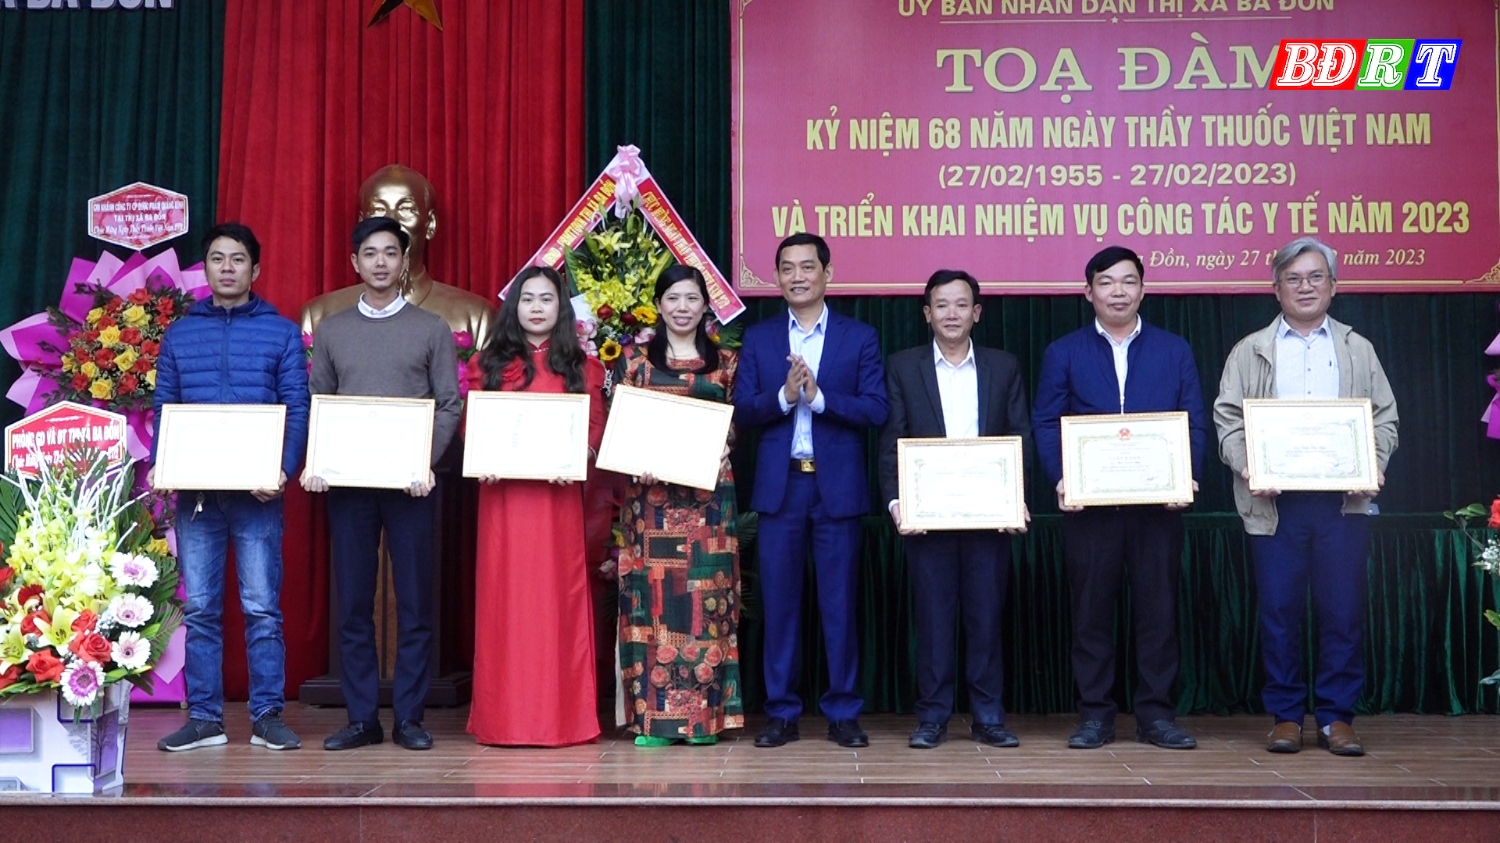 Đồng chí Nguyễn Văn Tình Phó Chủ tịch UBND thị xã tặng giấy khen cho 9 cá nhân vì đã có thành tích trong công tác y tế năm 2022